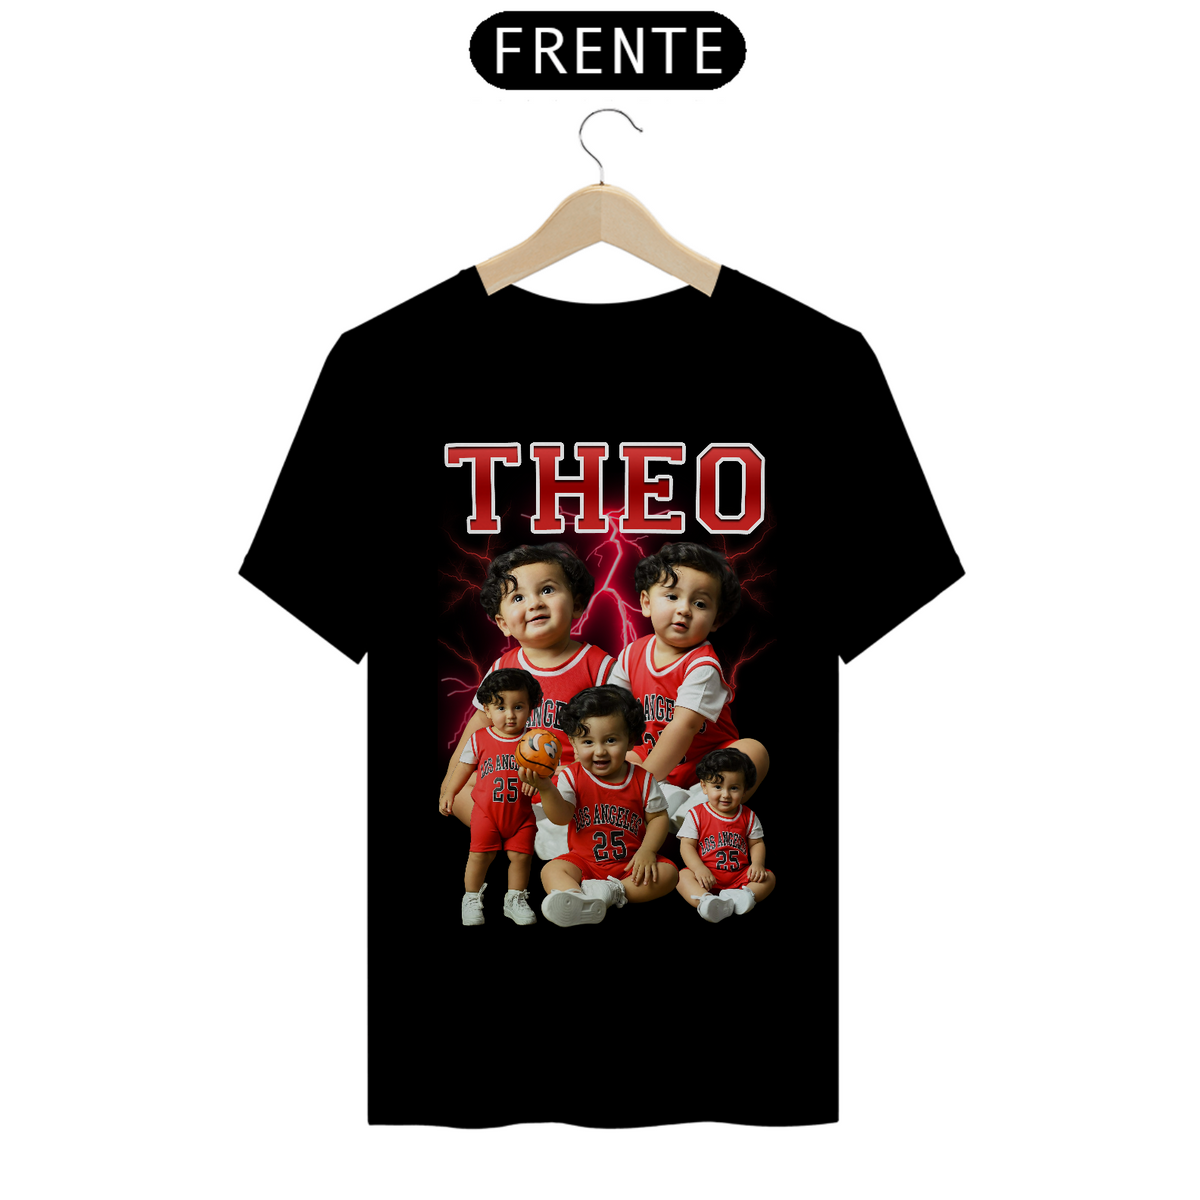 Nome do produto: Camiseta Theo